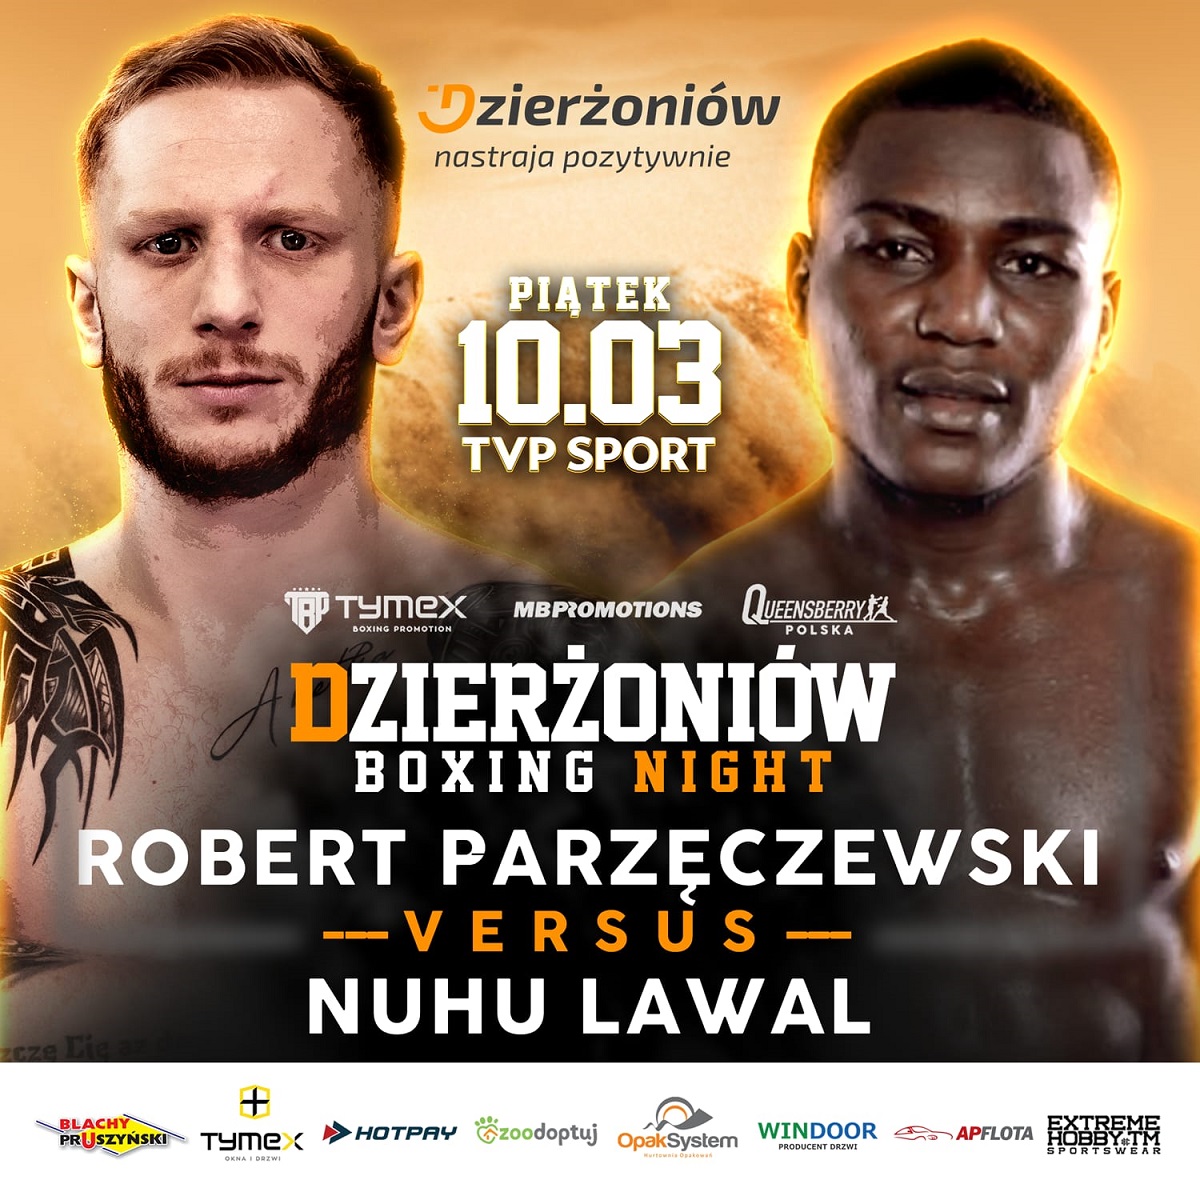 Dzierzoniow-Boxing-Night-z-tranmisja-w-TVP-Sport.jpeg